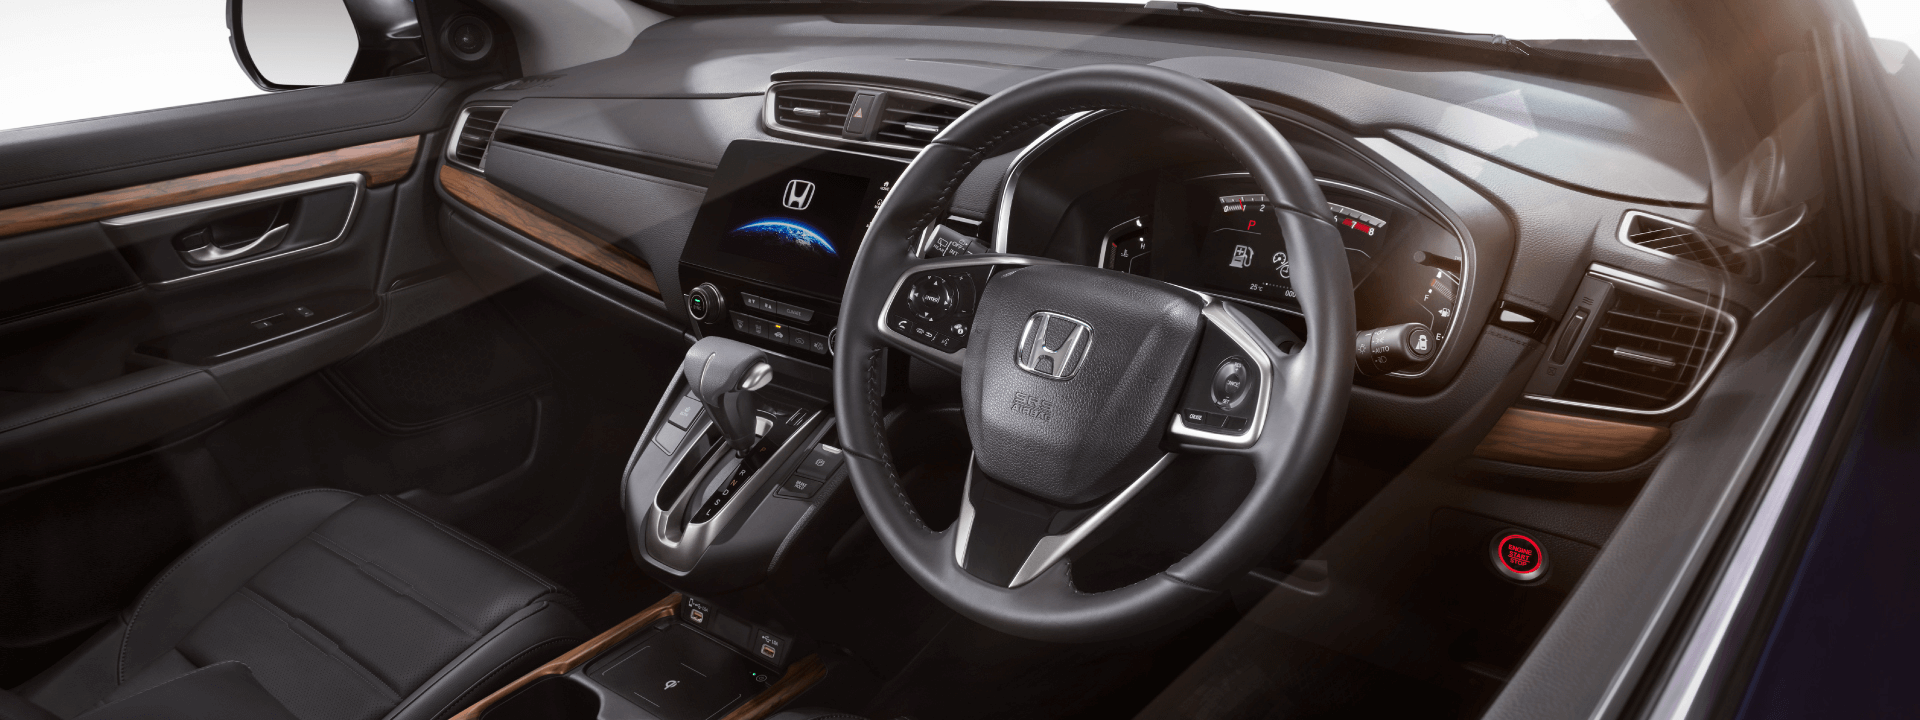 การออกแบบภายใน Honda CRV 2021